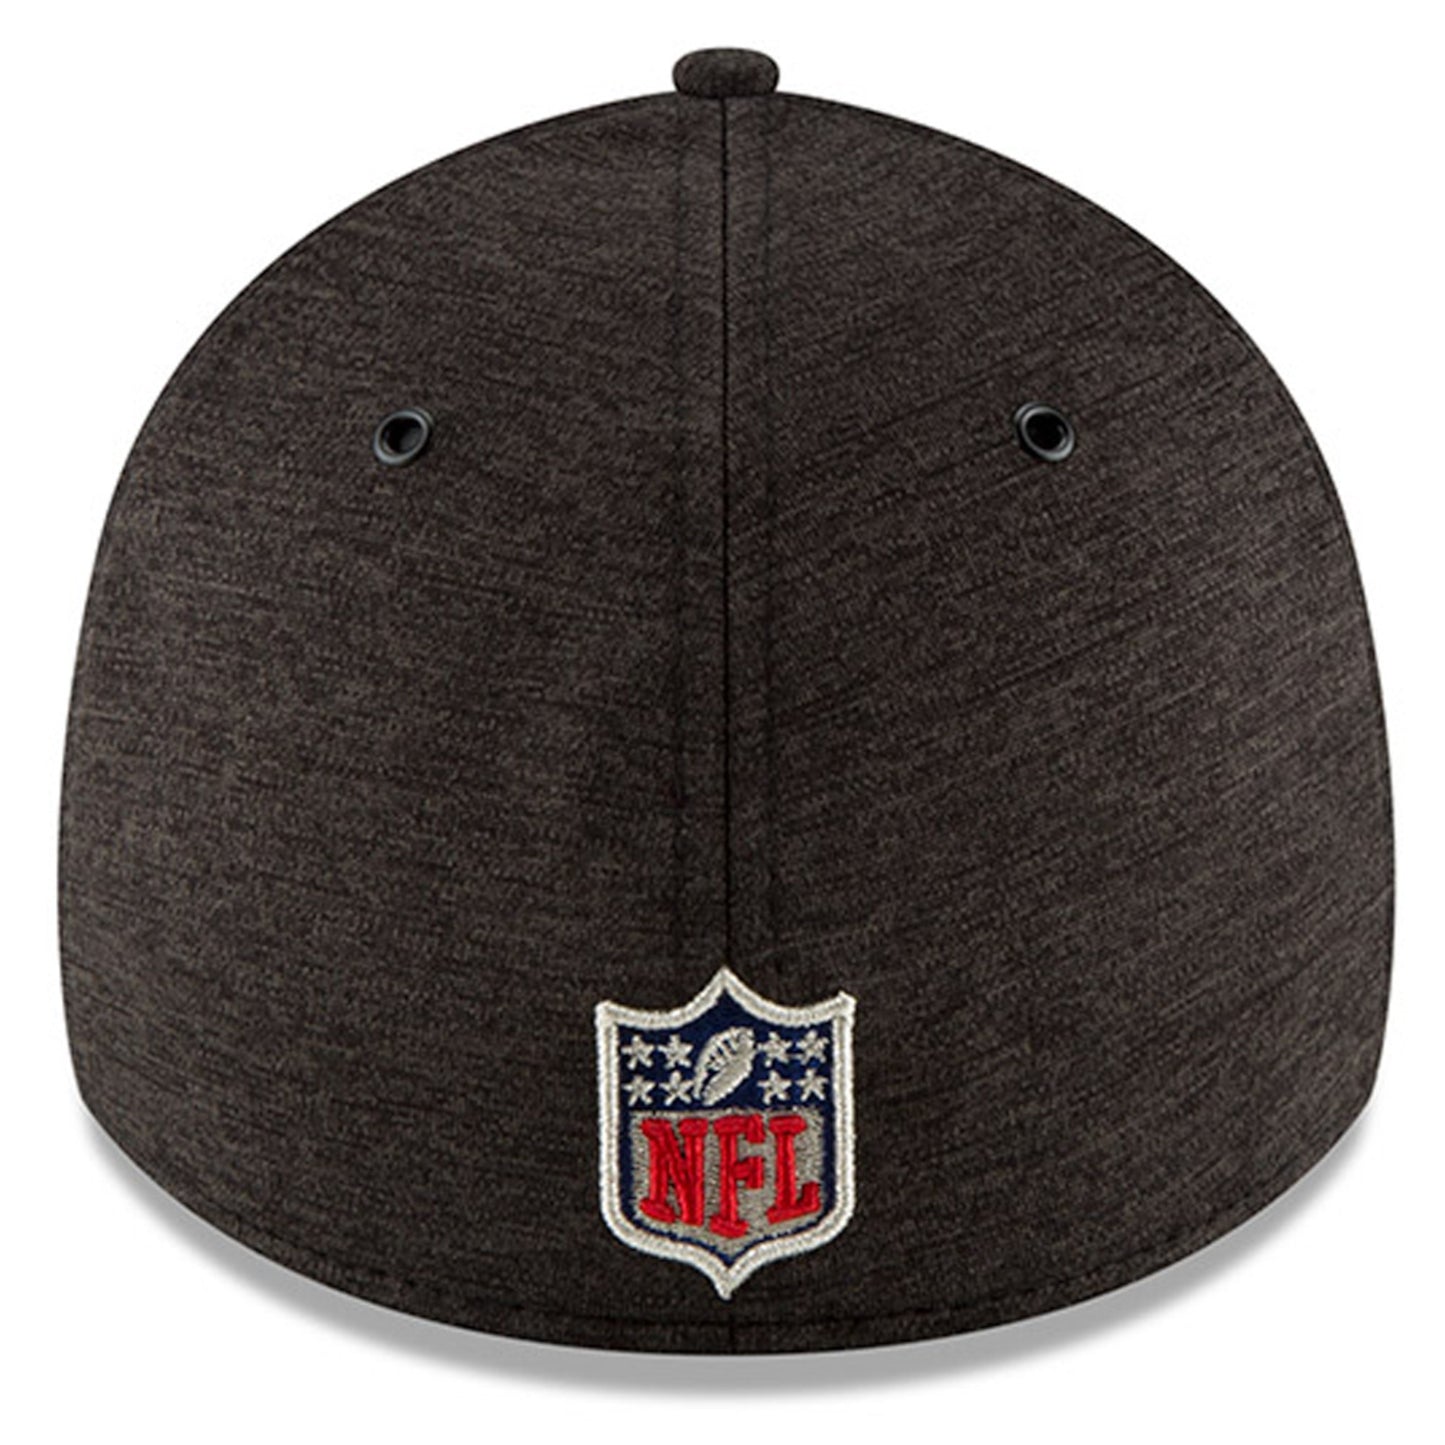 Men's Carolina Panthers New Era Black/Blue NFL18 Sideline Home Official 39THIRTY Flex Hat